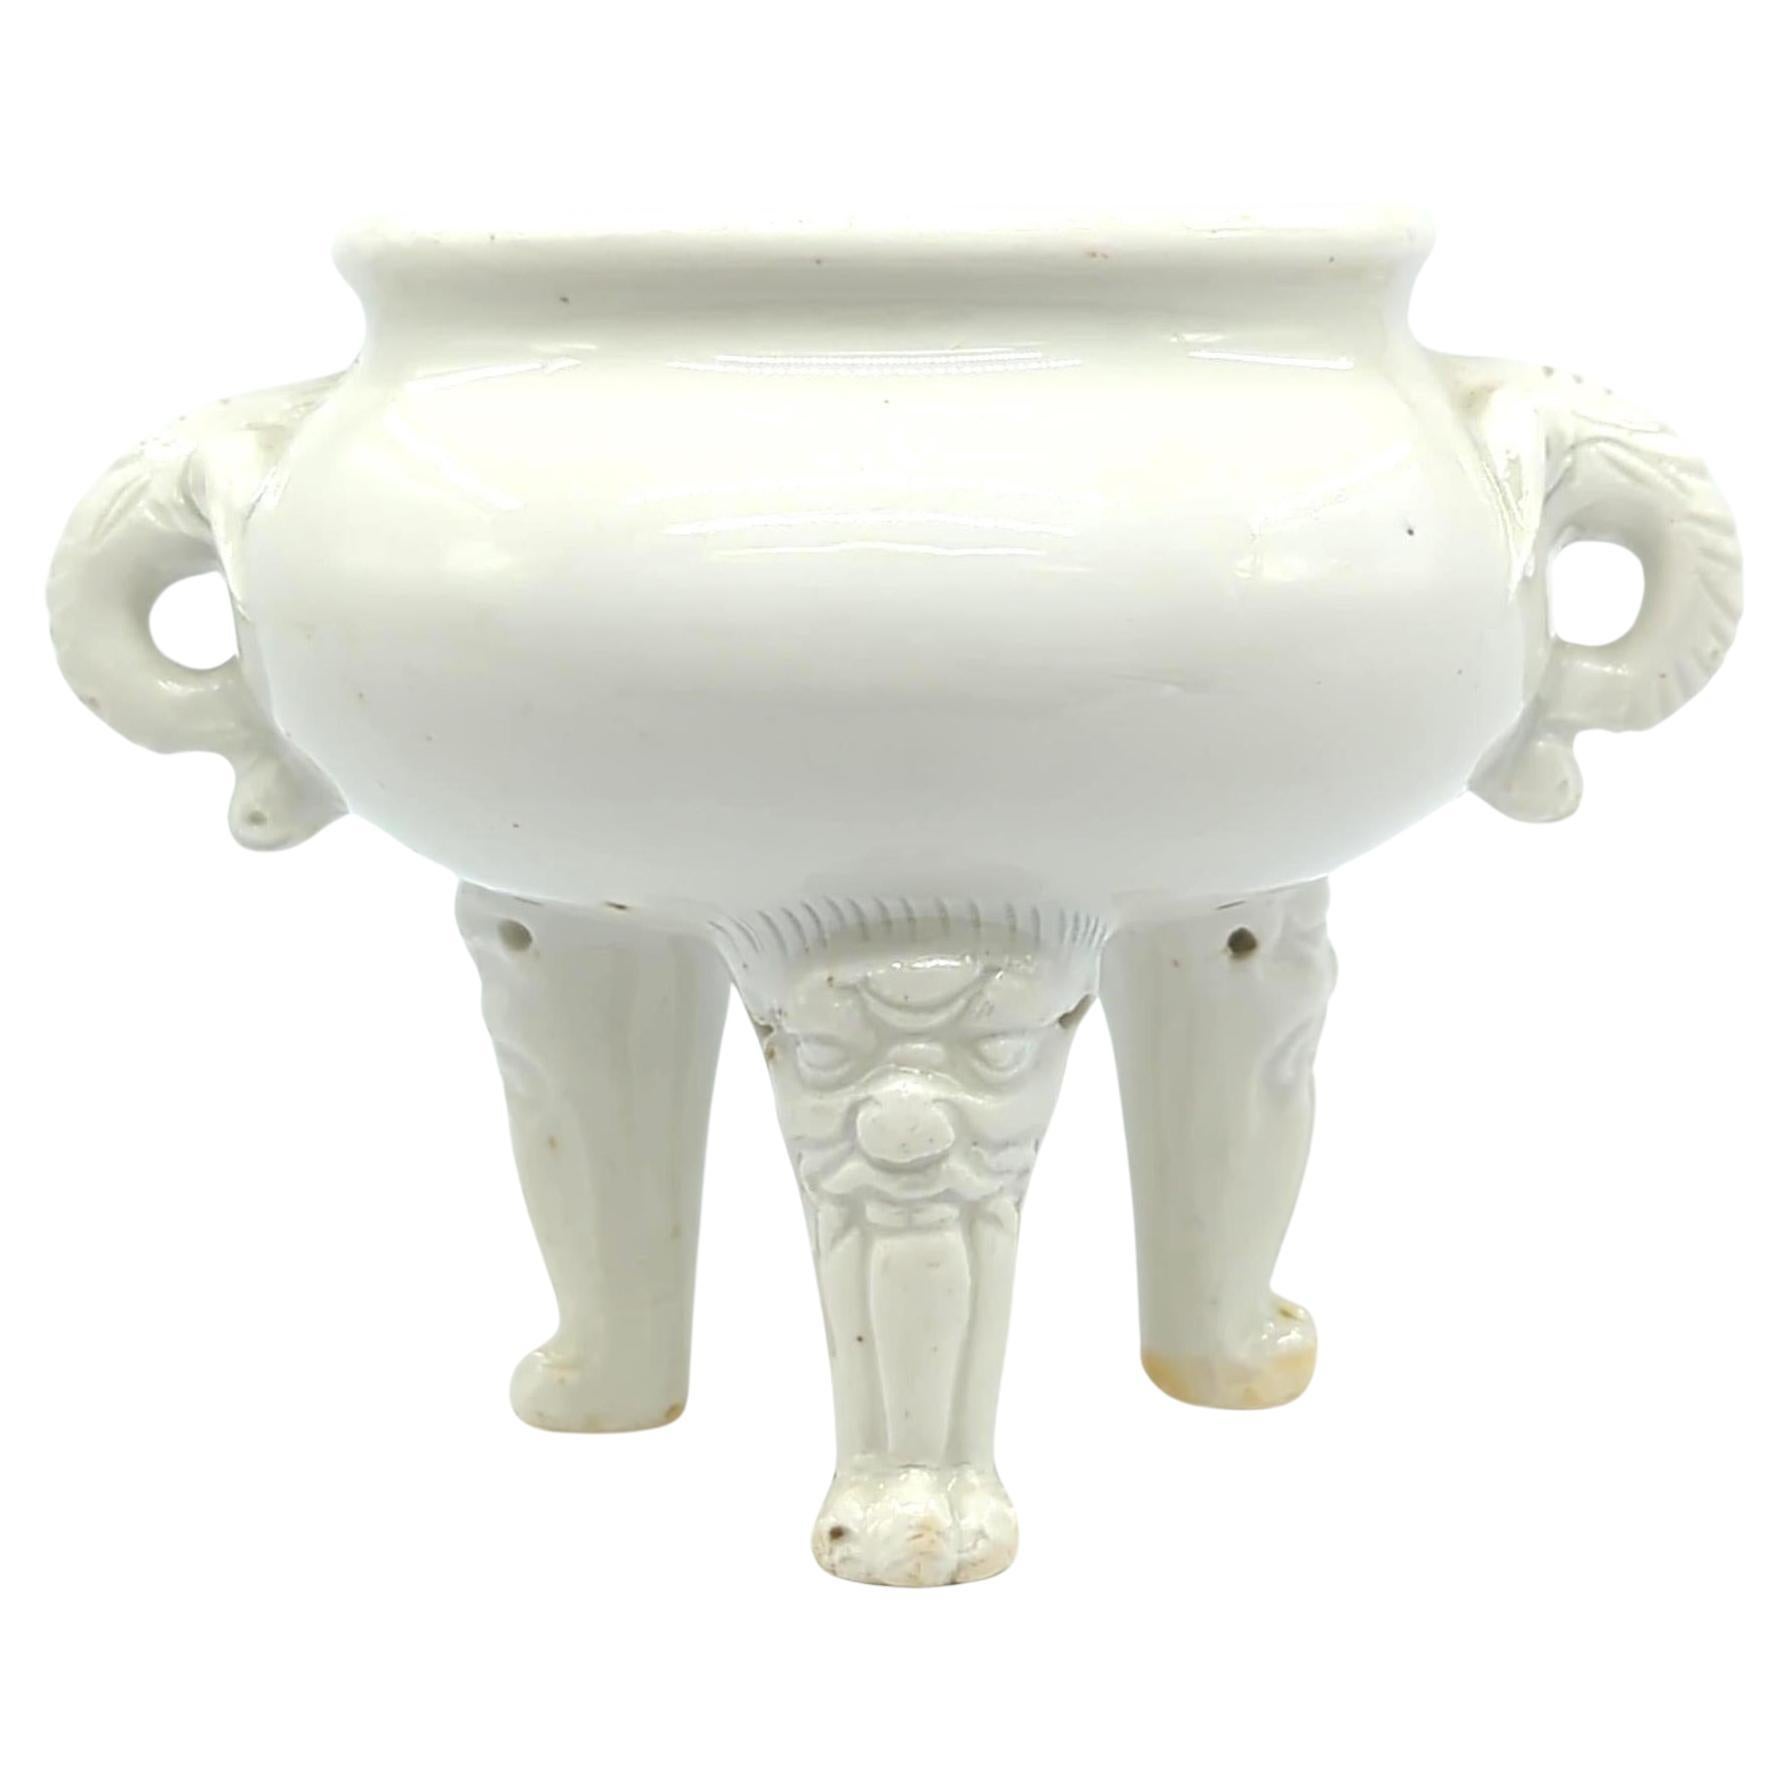 Cet encensoir tripode en porcelaine chinoise blanc de chine du XVIIIe siècle est un exemple d'artisanat raffiné et de détails complexes, caractéristiques de l'ère Kangxi. L'encensoir est fabriqué selon la technique du blanc de chine, connue pour sa